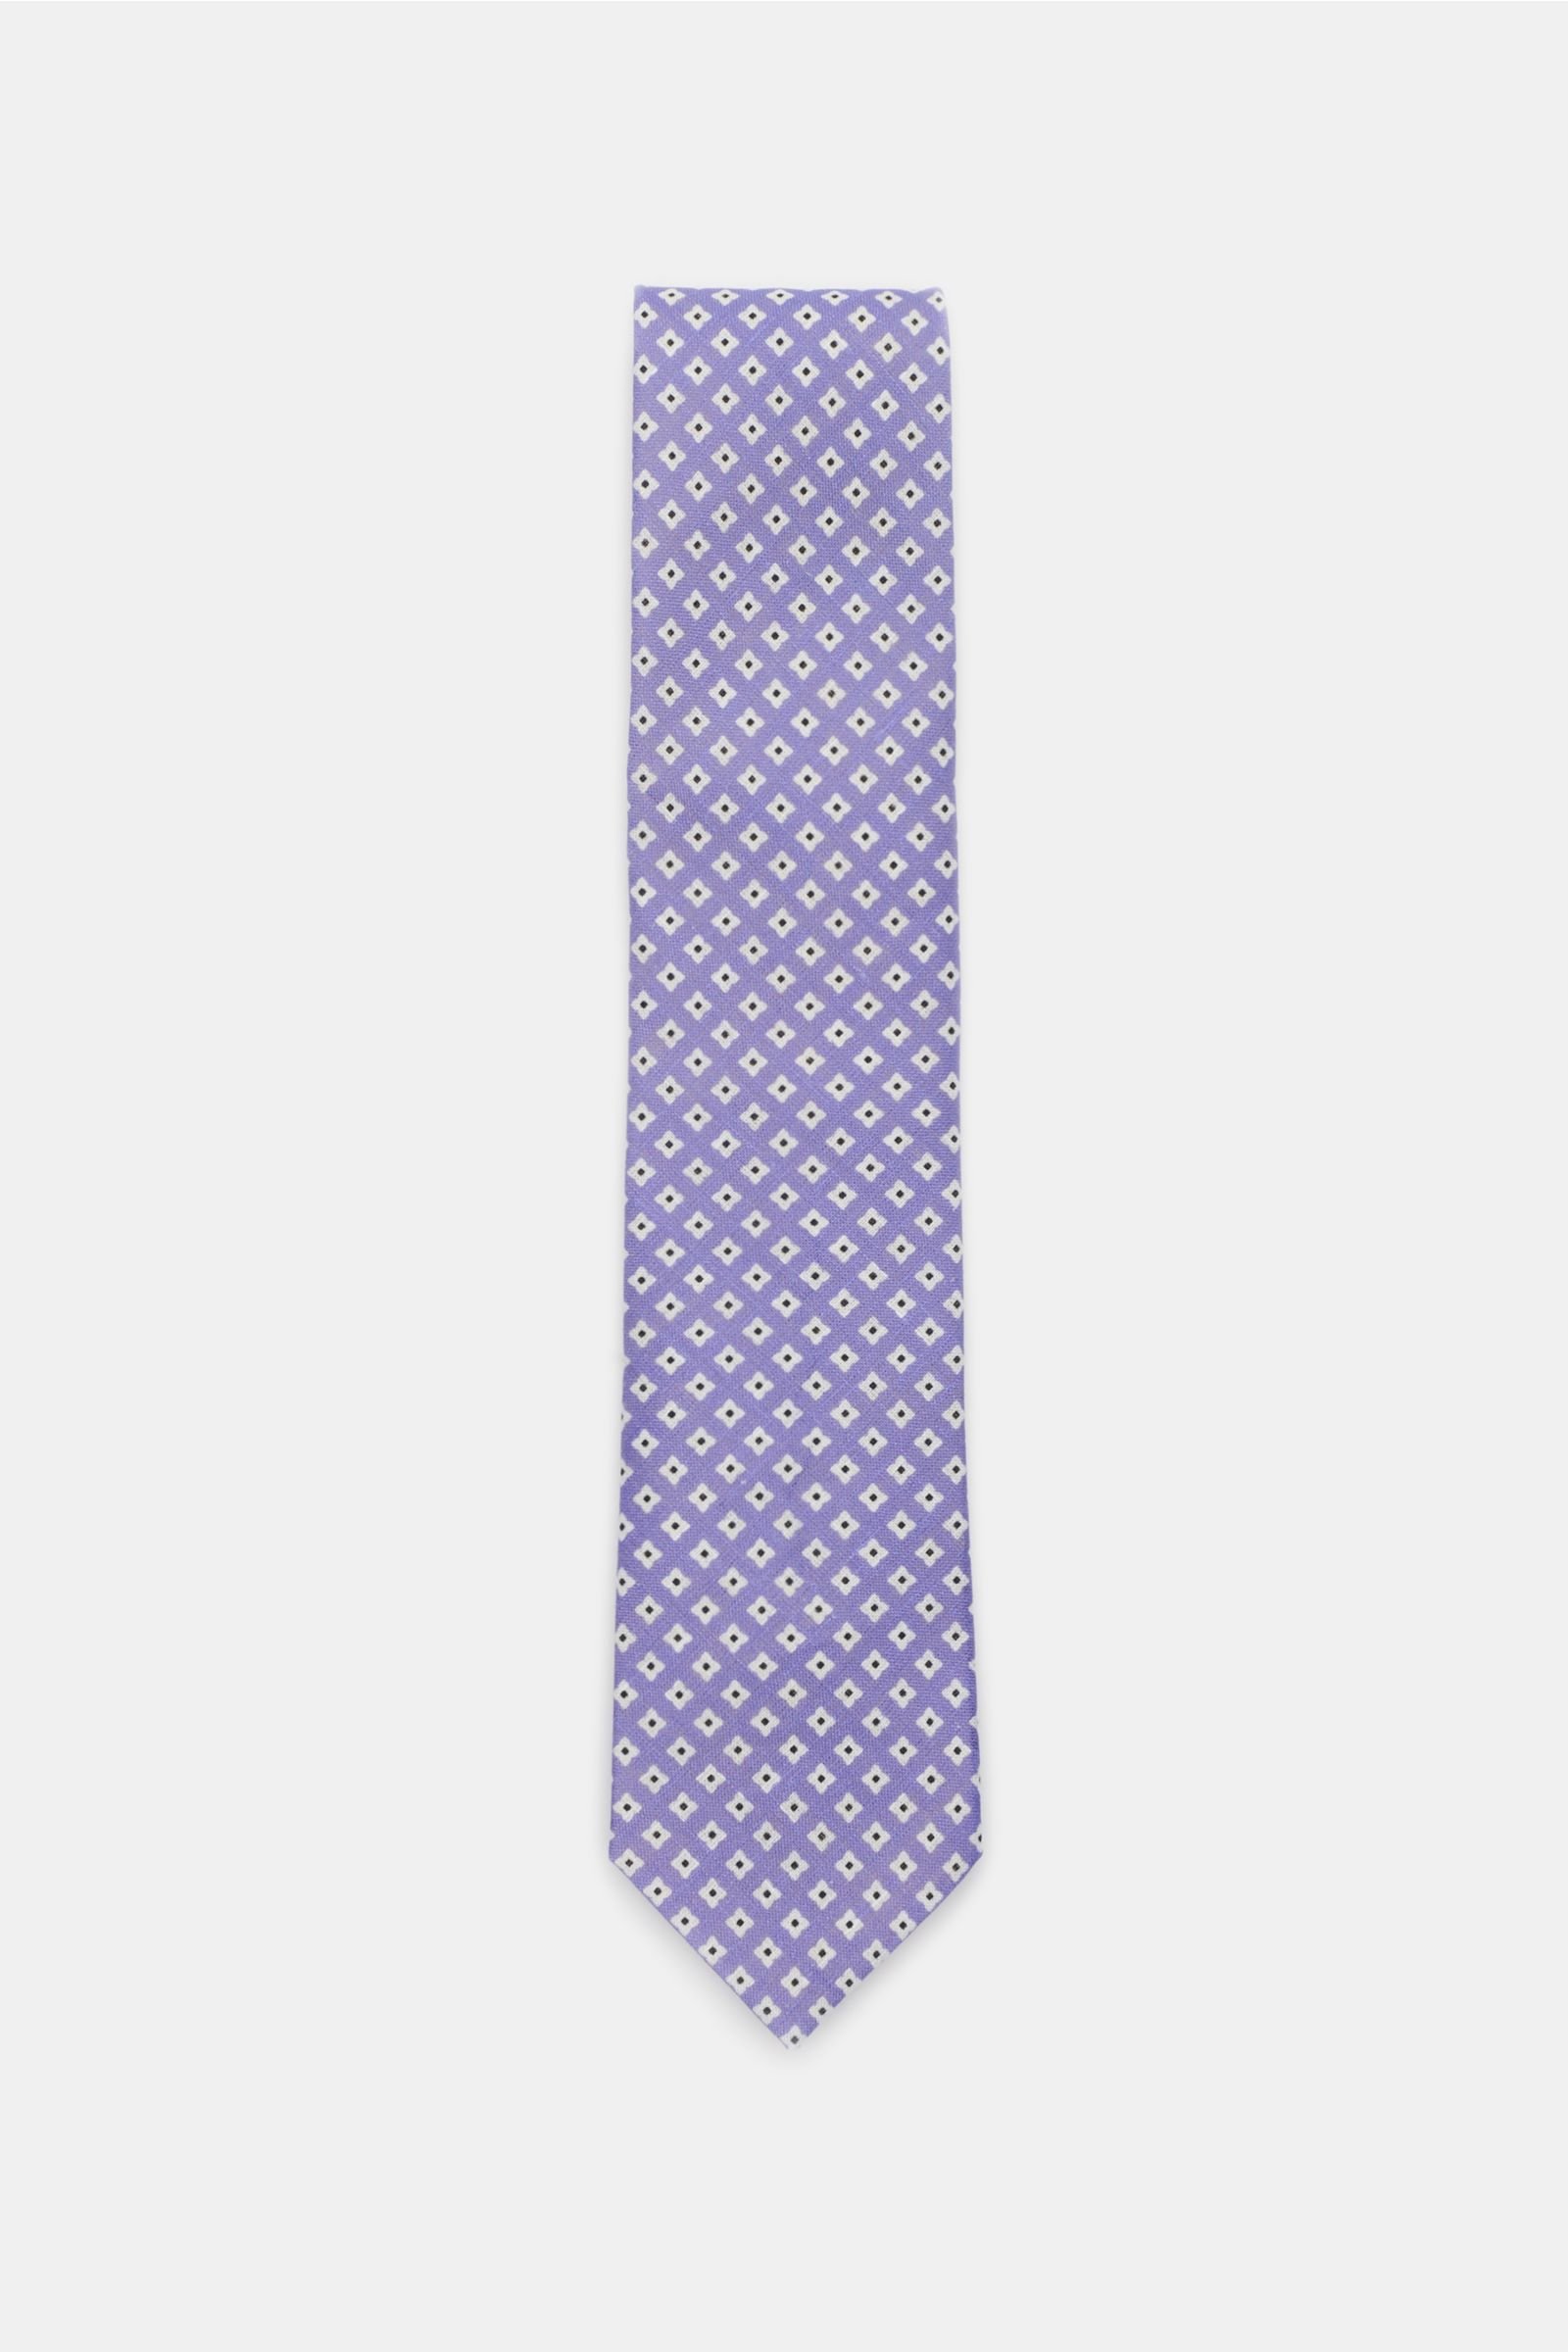 Linen tie purple patterned